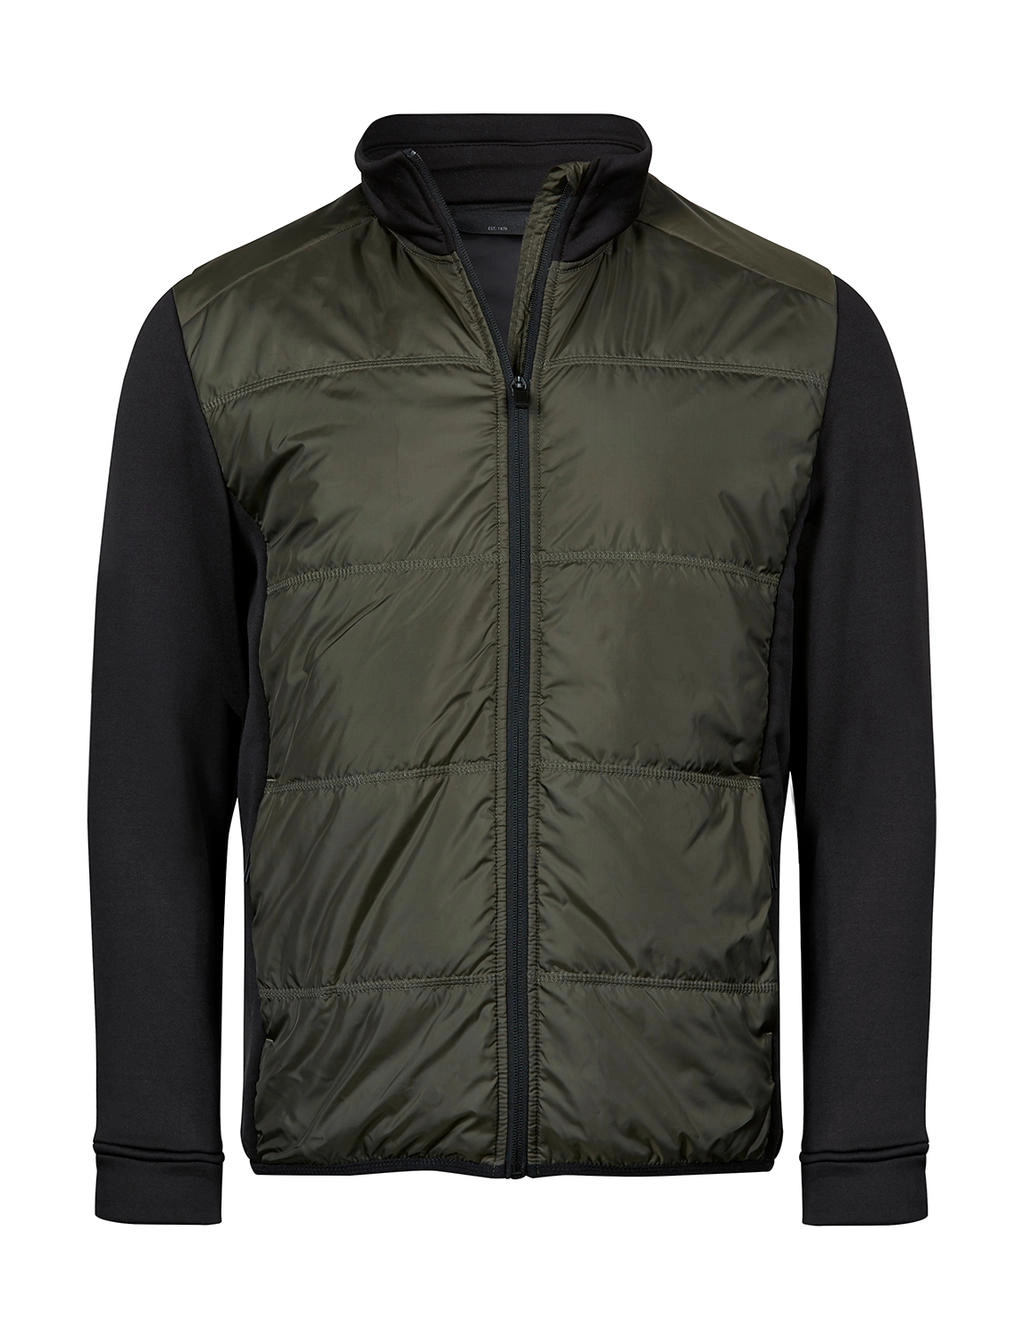 Hybrid-Stretch Jacket zum Besticken und Bedrucken in der Farbe Deep Green/Black mit Ihren Logo, Schriftzug oder Motiv.